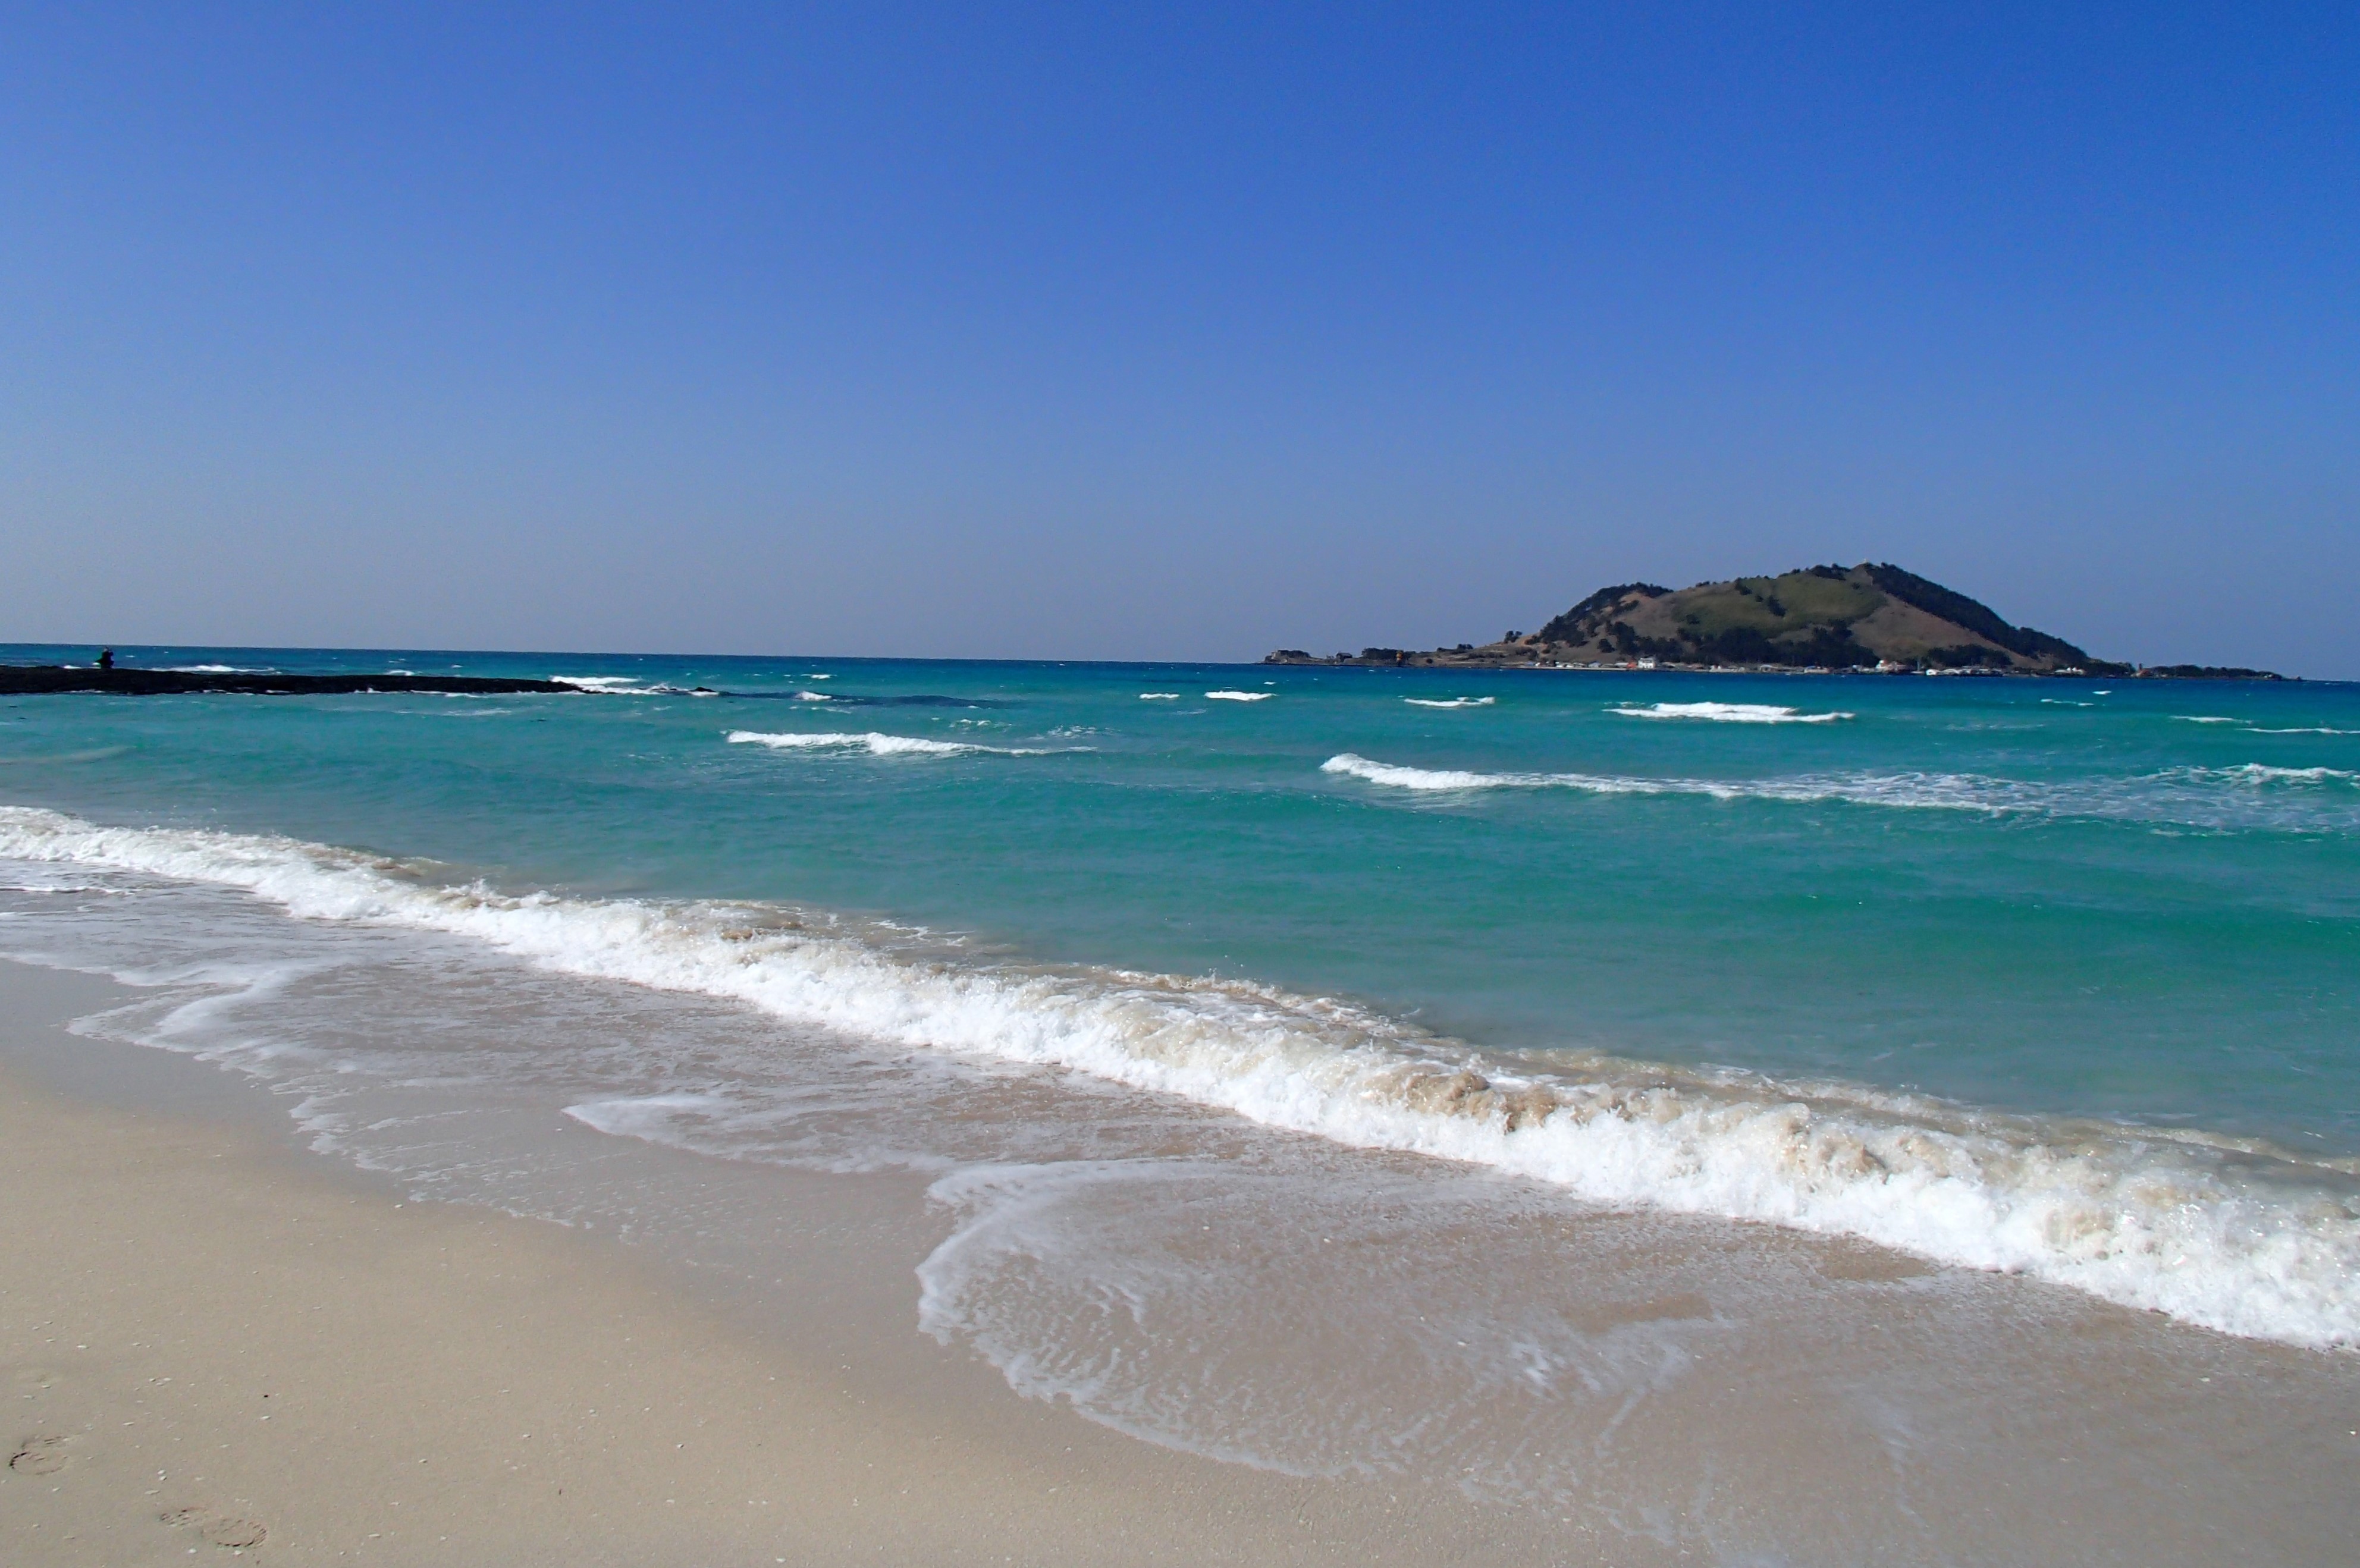 Bãi biển Hyeopjae với làn nước xanh lấp lánh